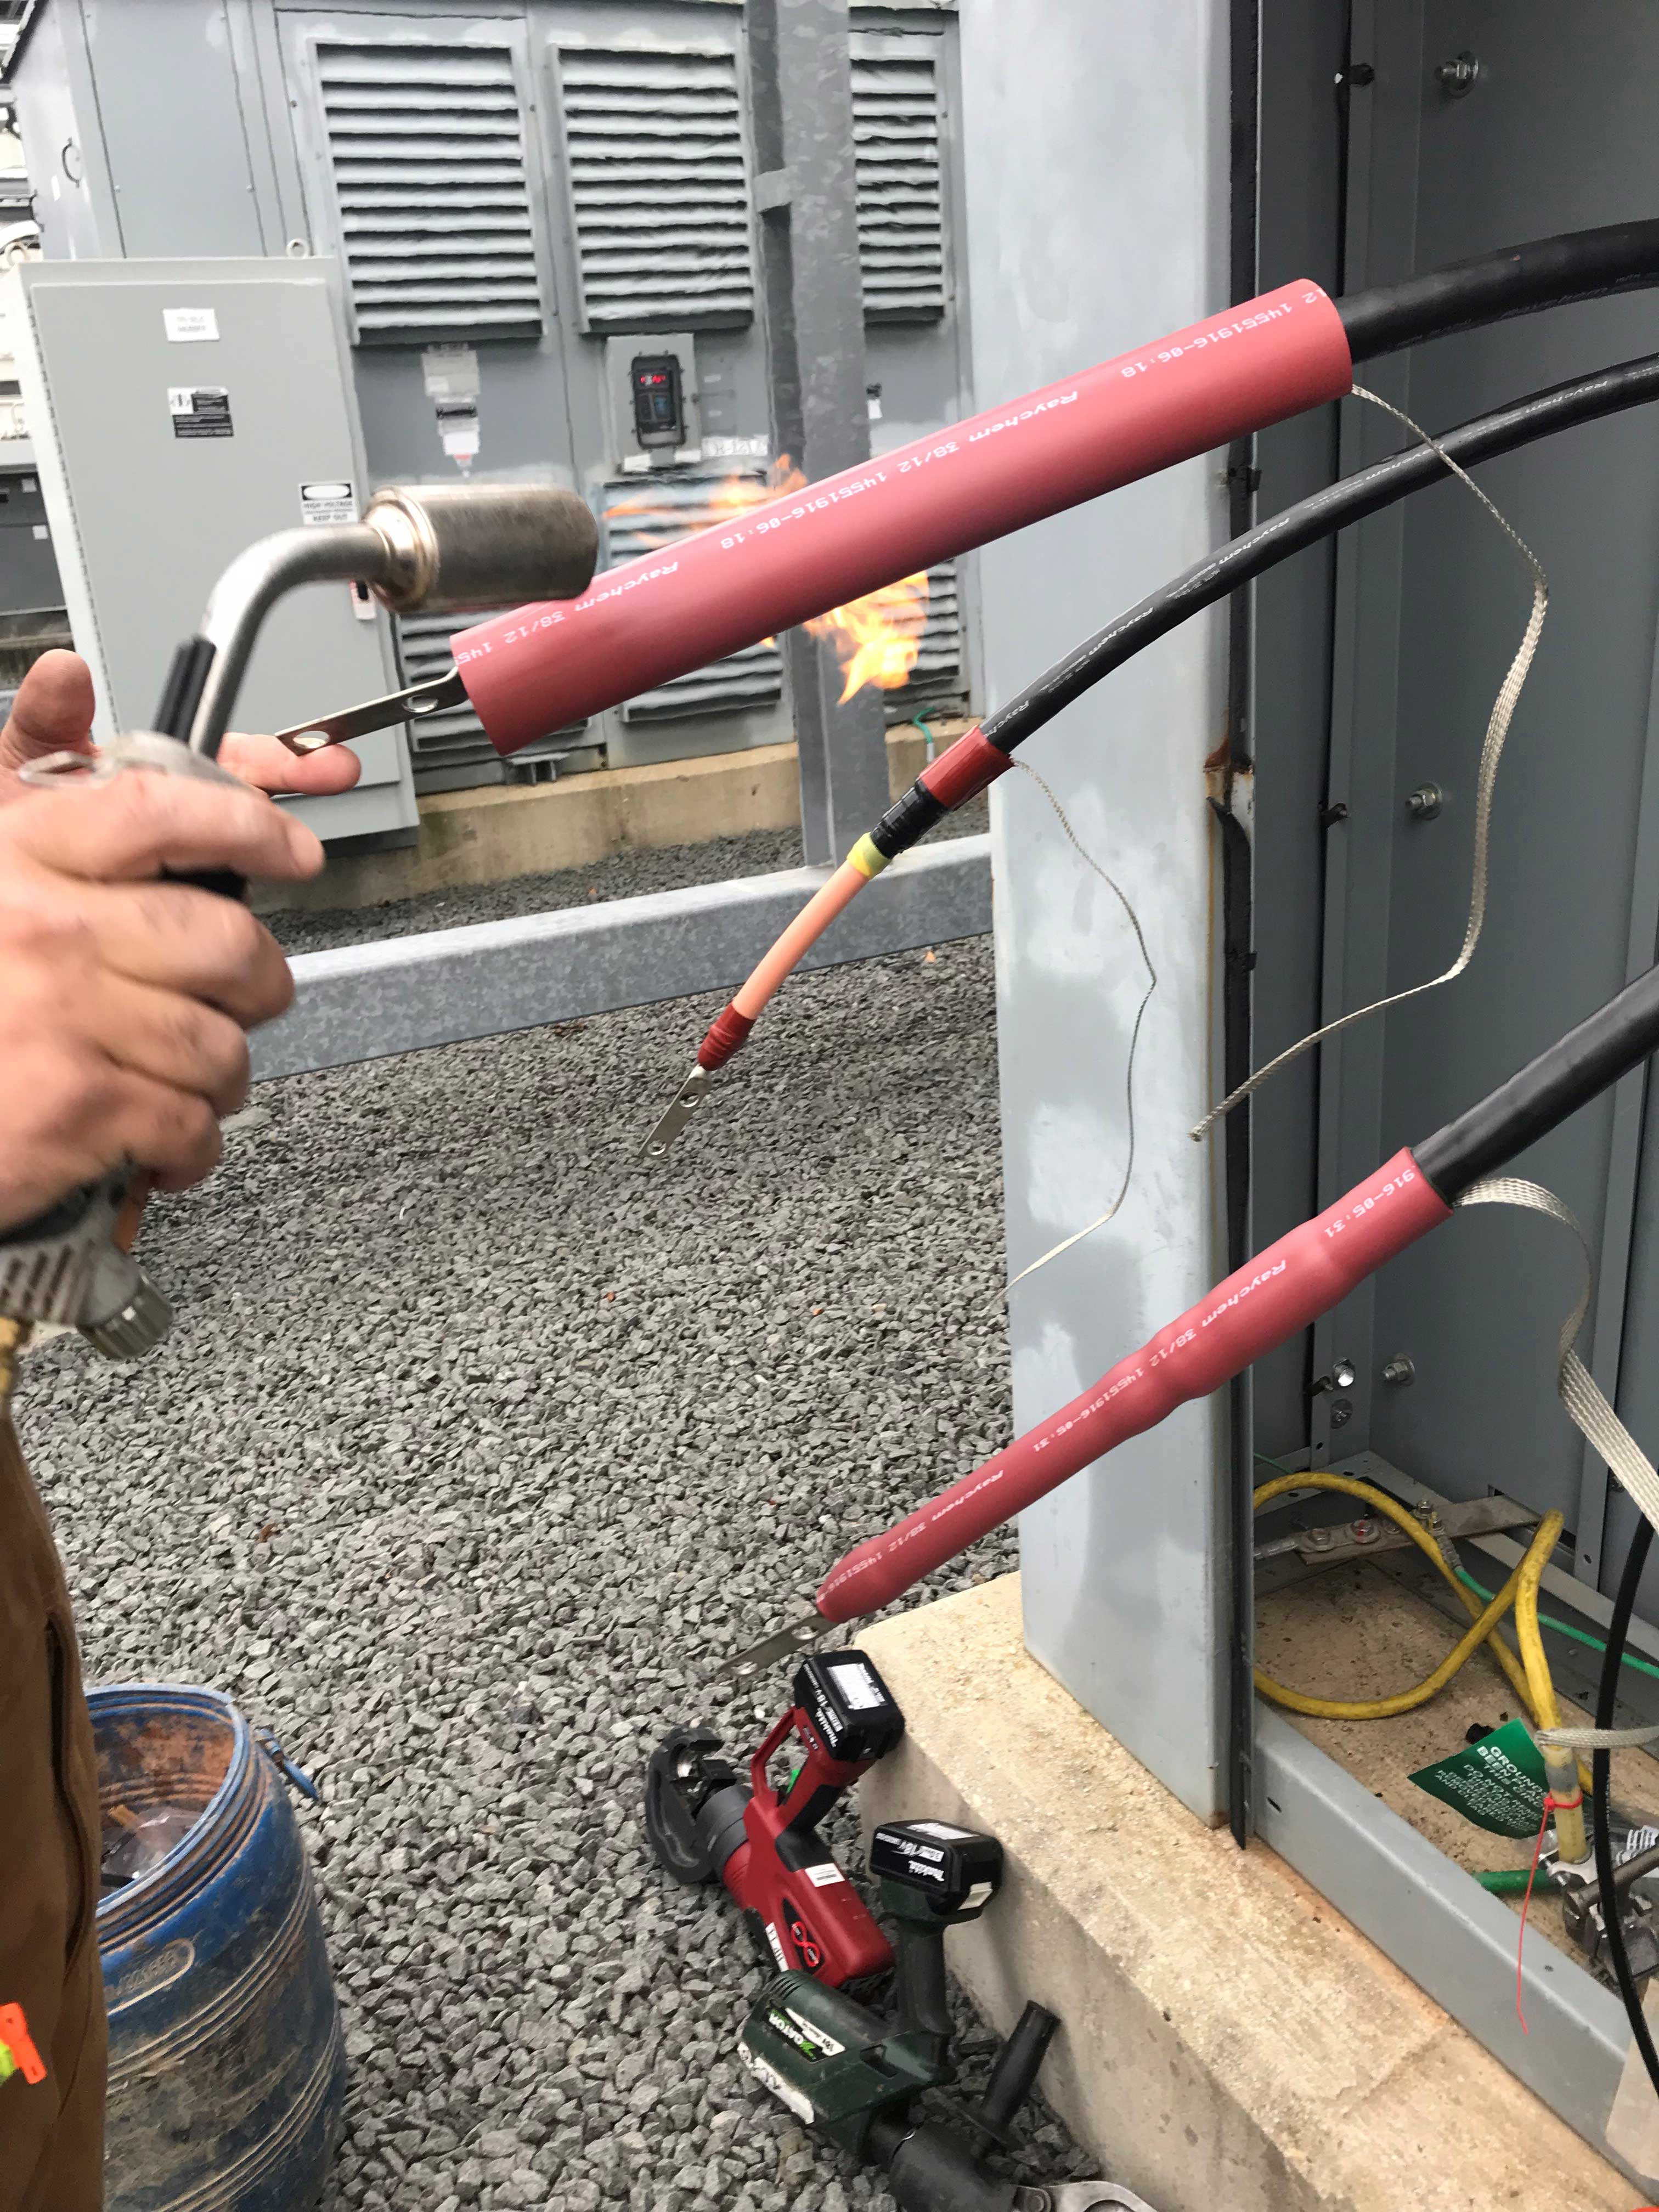 MV cable splice termination heatshrink